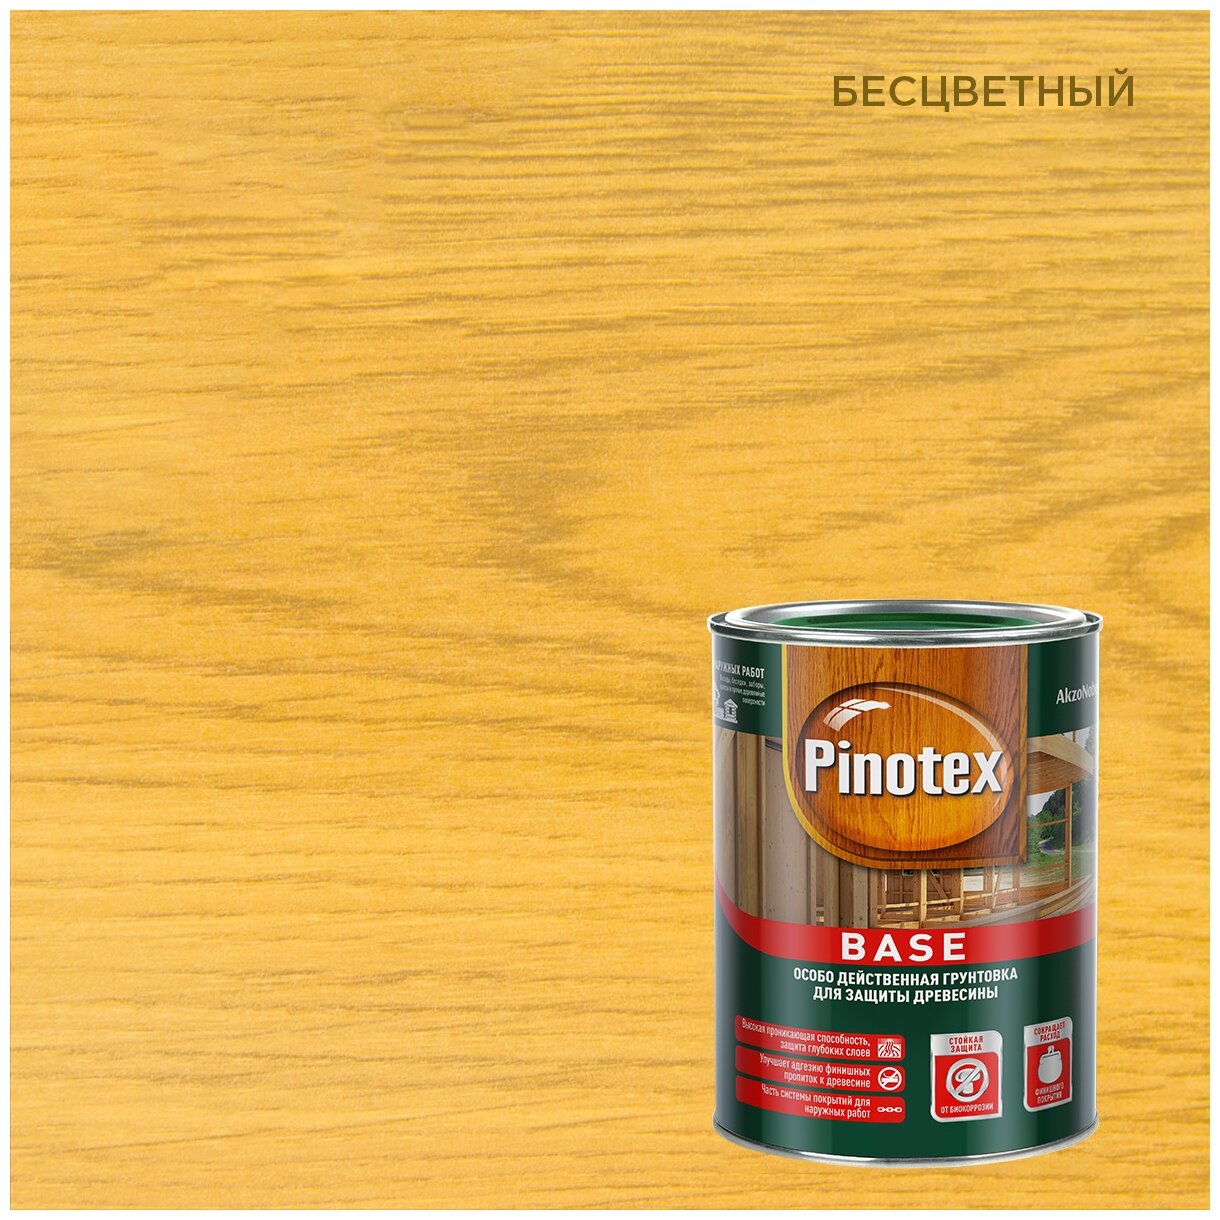 -   Pinotex Base (1)